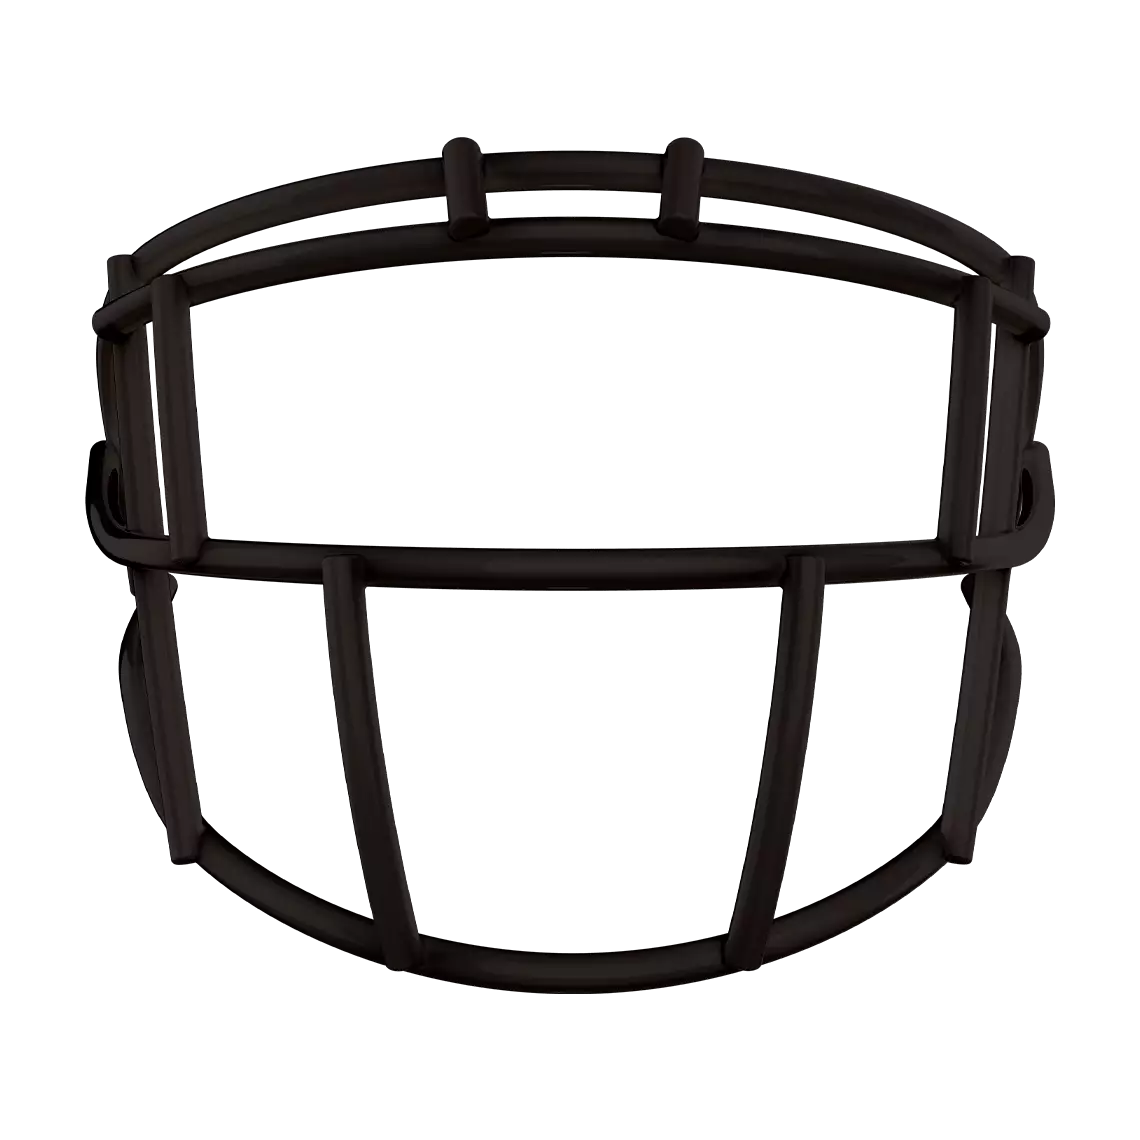 Black XRS-21SX face mask for football helmet.